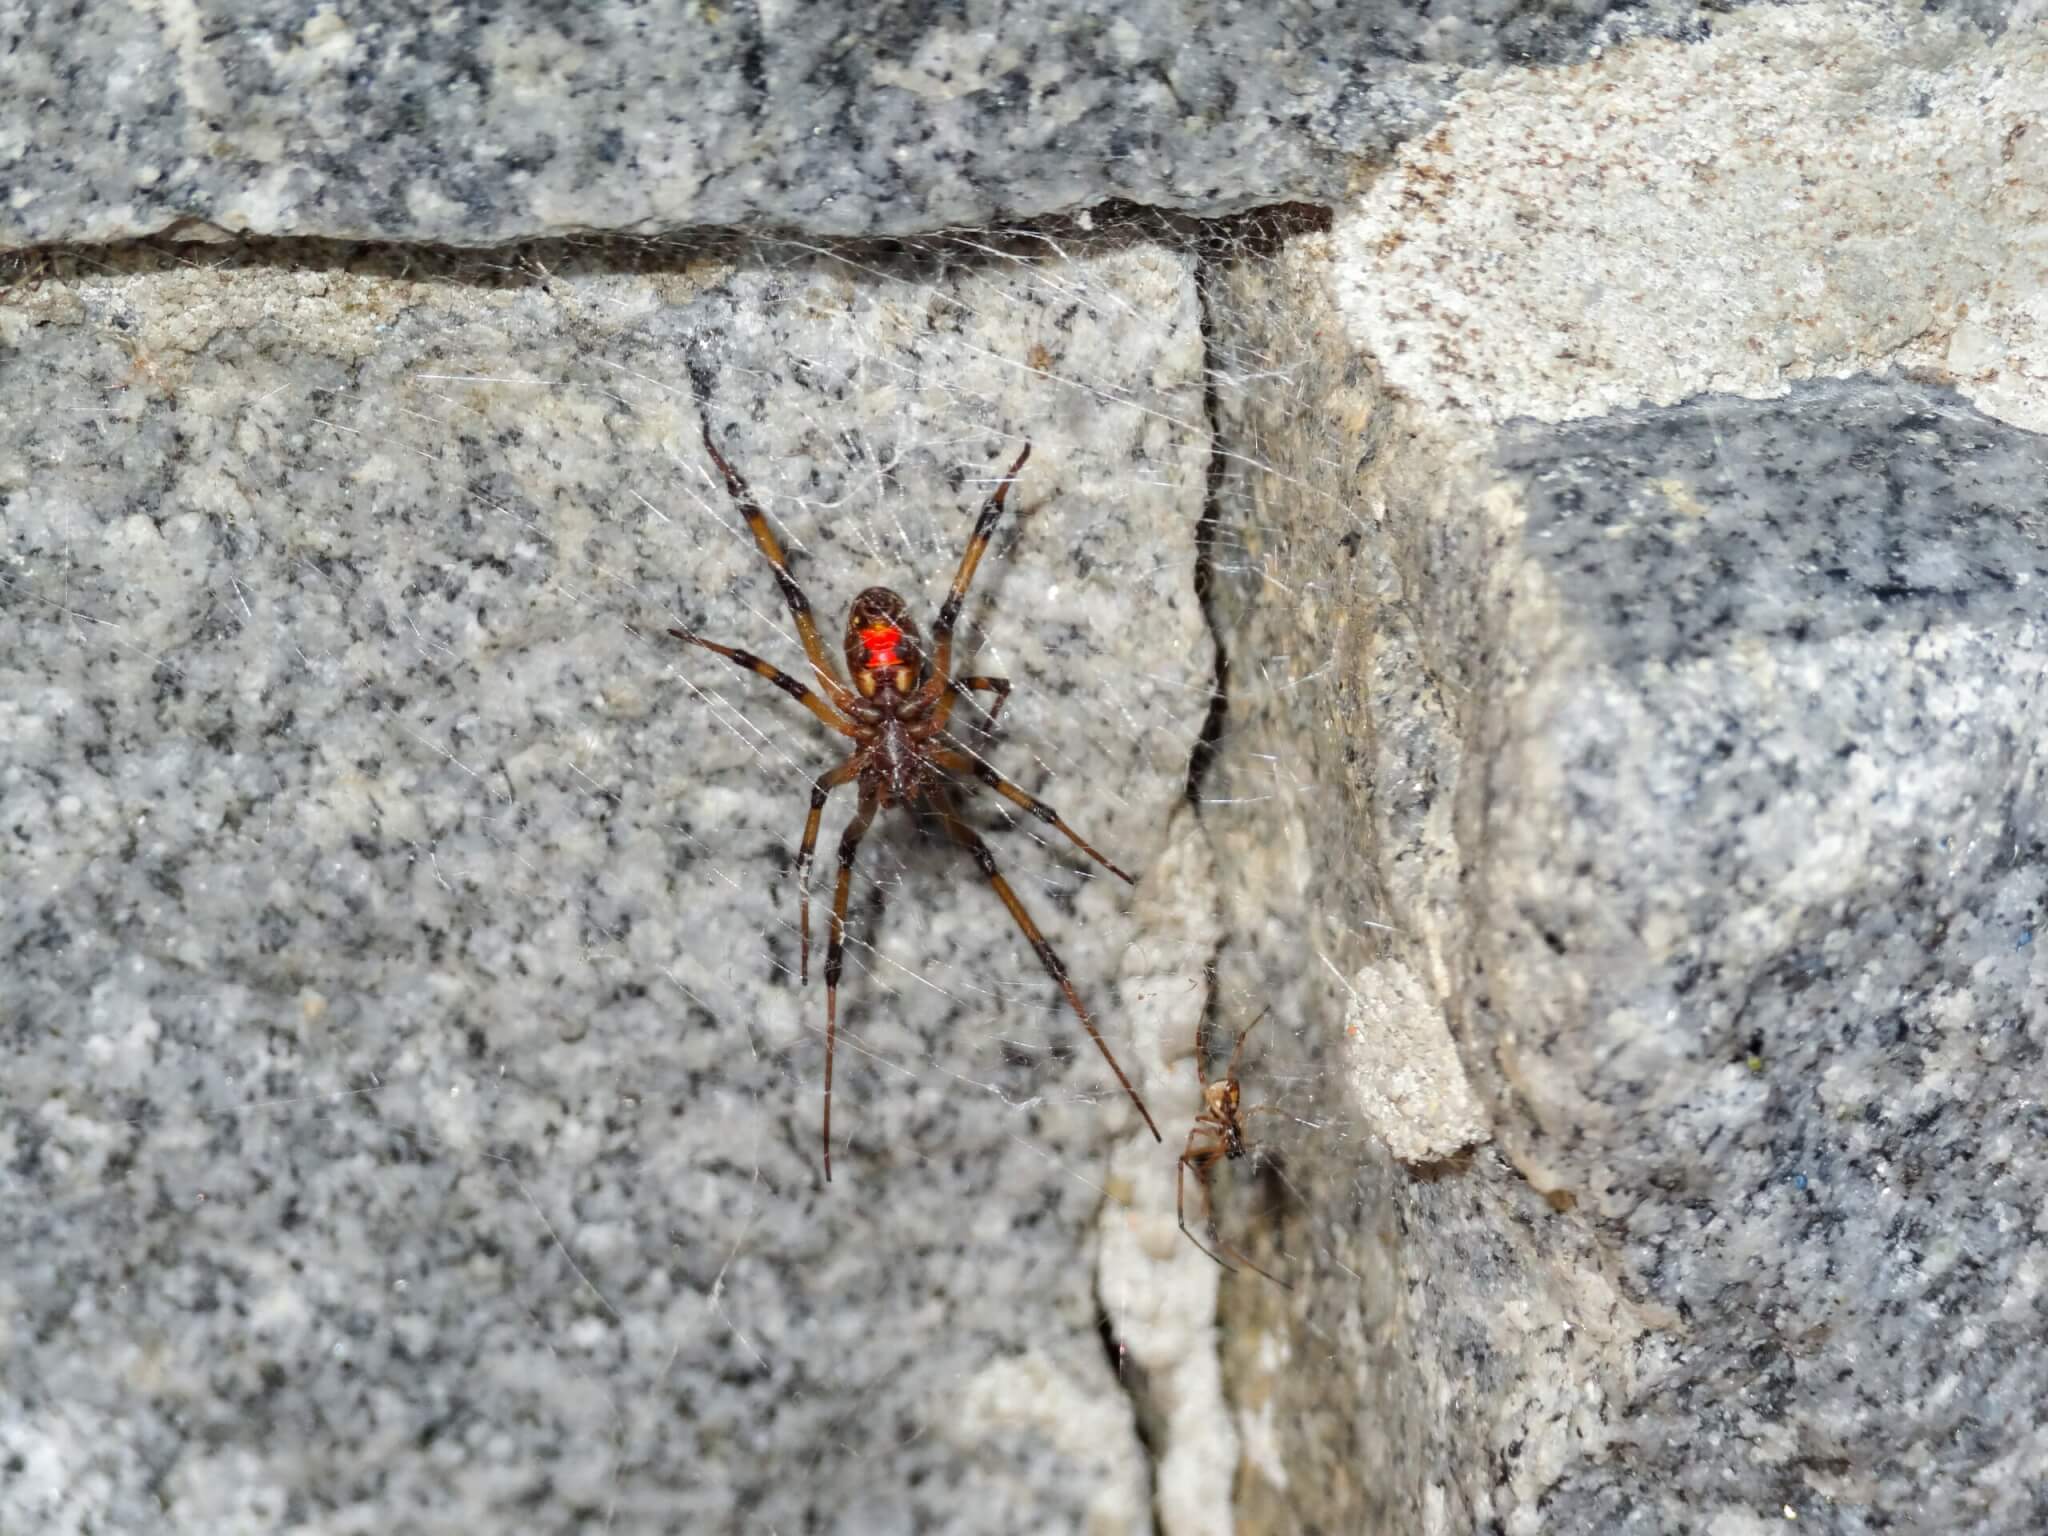 Brown widow spider.